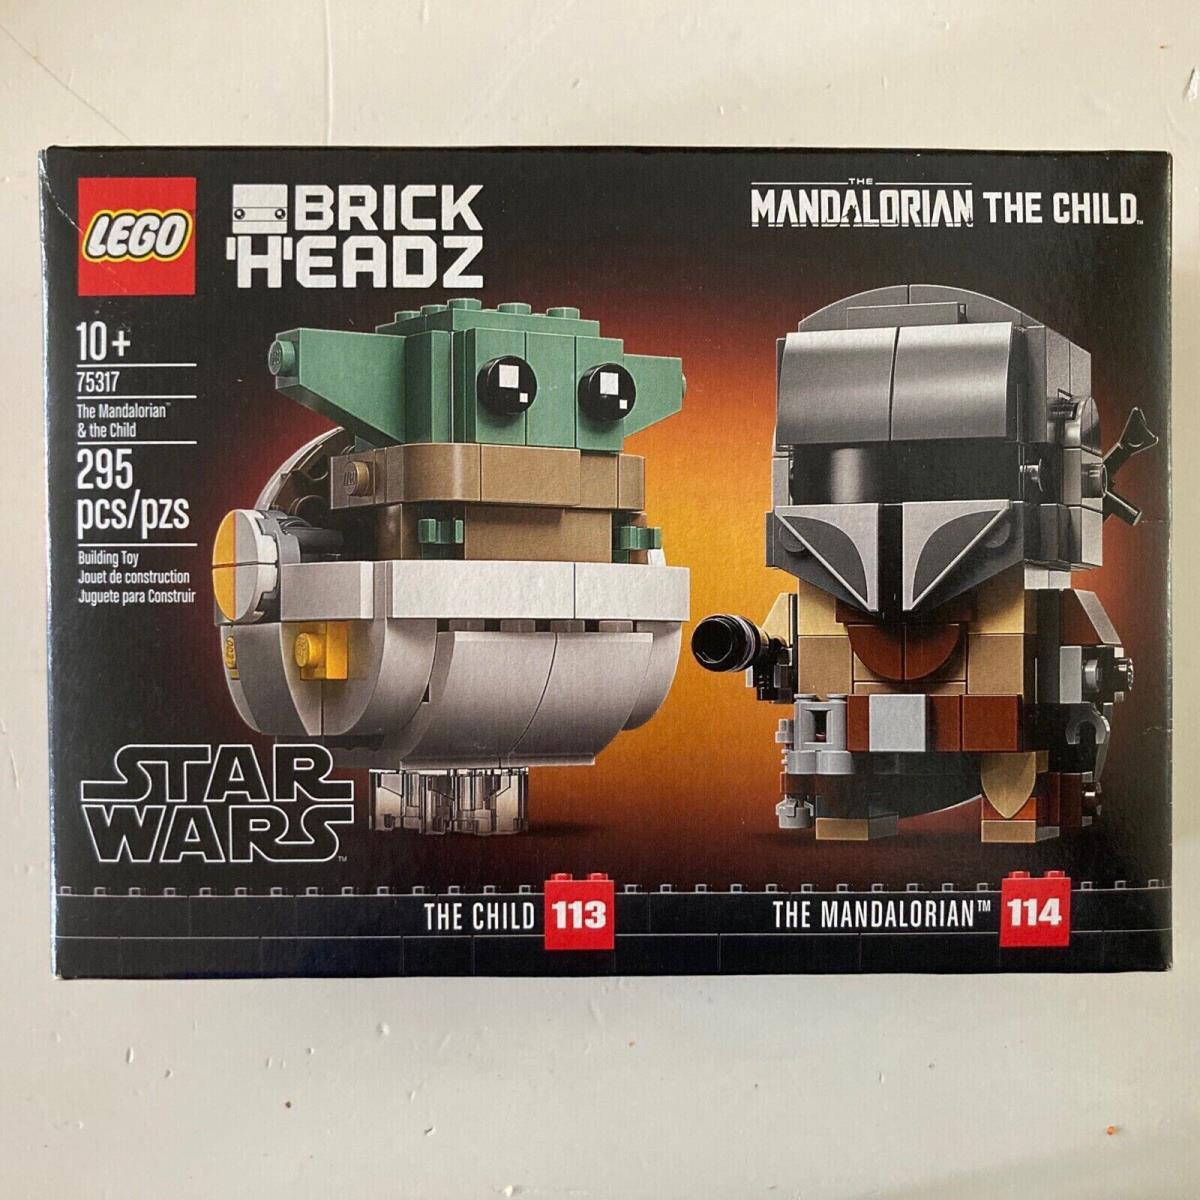 Lego Star Wars: The Mandalorian The Child 75317 Building Kit 295 Pcs